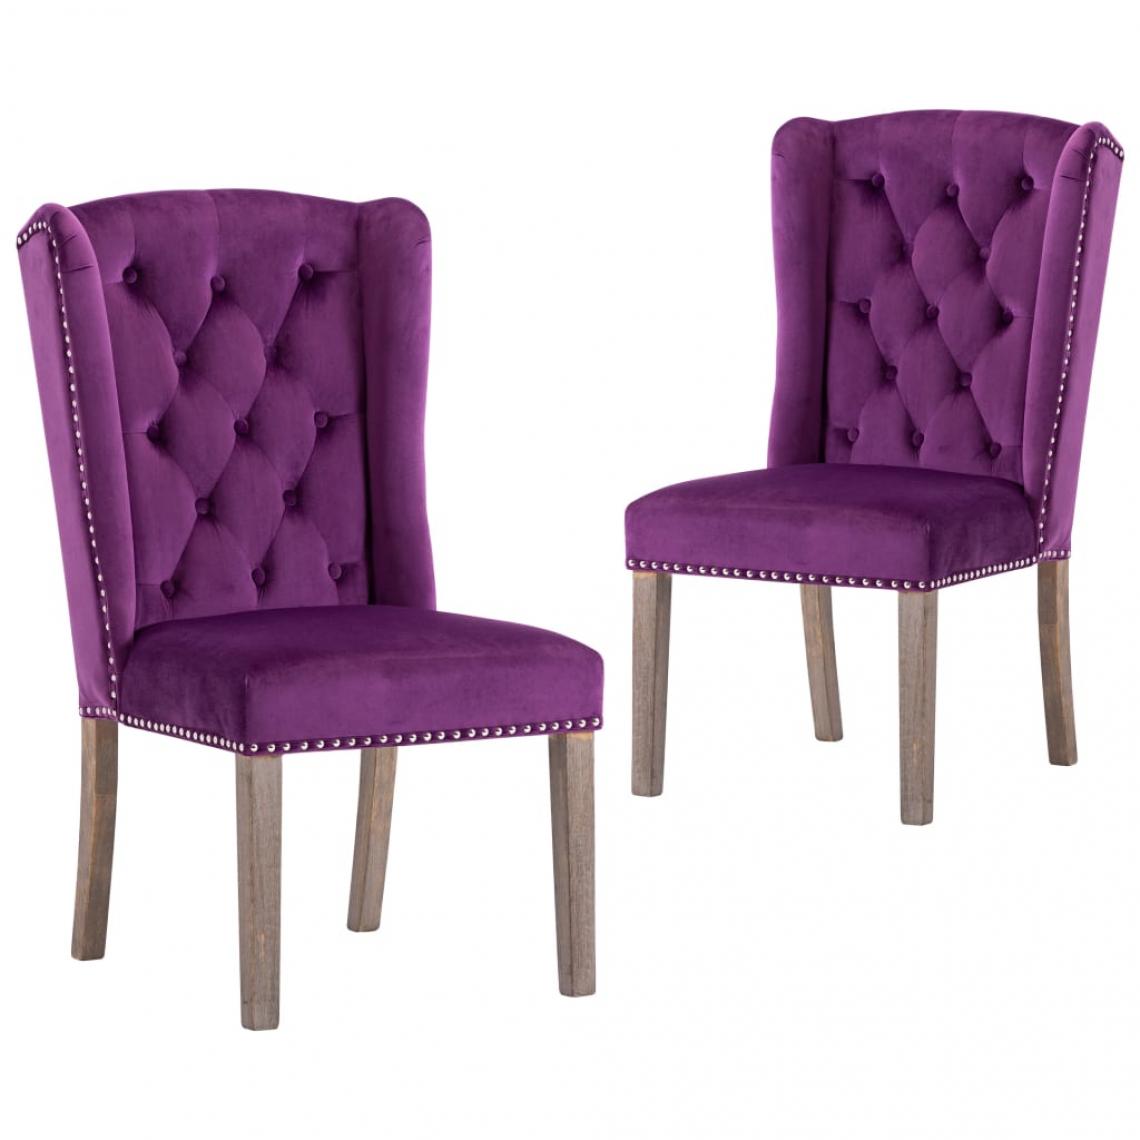 Decoshop26 - Lot de 2 chaises de salle à manger cuisine design classique velours violet CDS021148 - Chaises